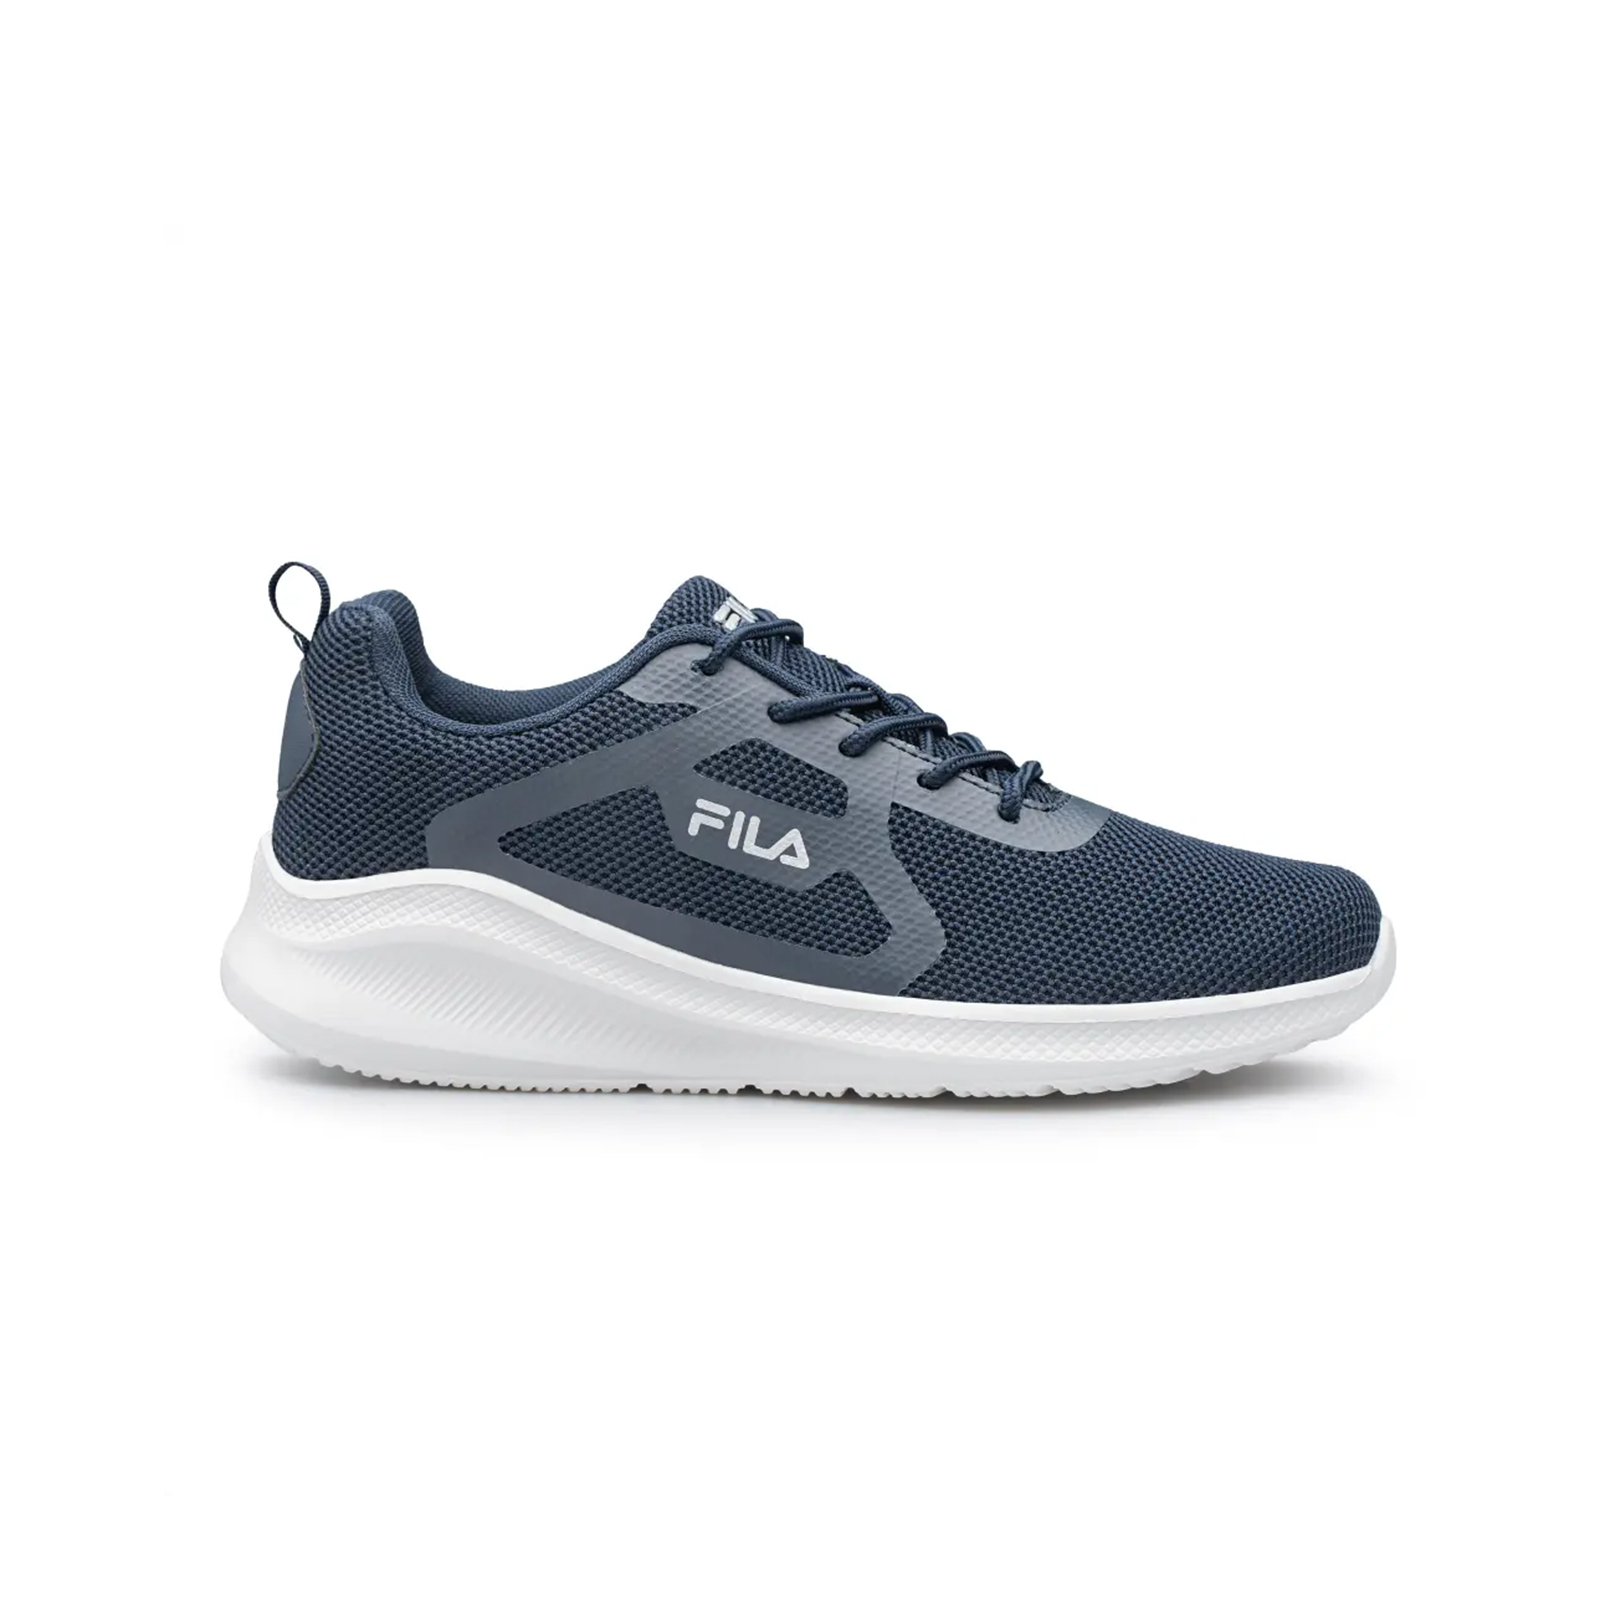 Fila - 1304049.0 CASSIA 2 FOOTWEAR - DARK BLUE SILVER Ανδρικά > Παπούτσια > Αθλητικά > Παπούτσι Low Cut